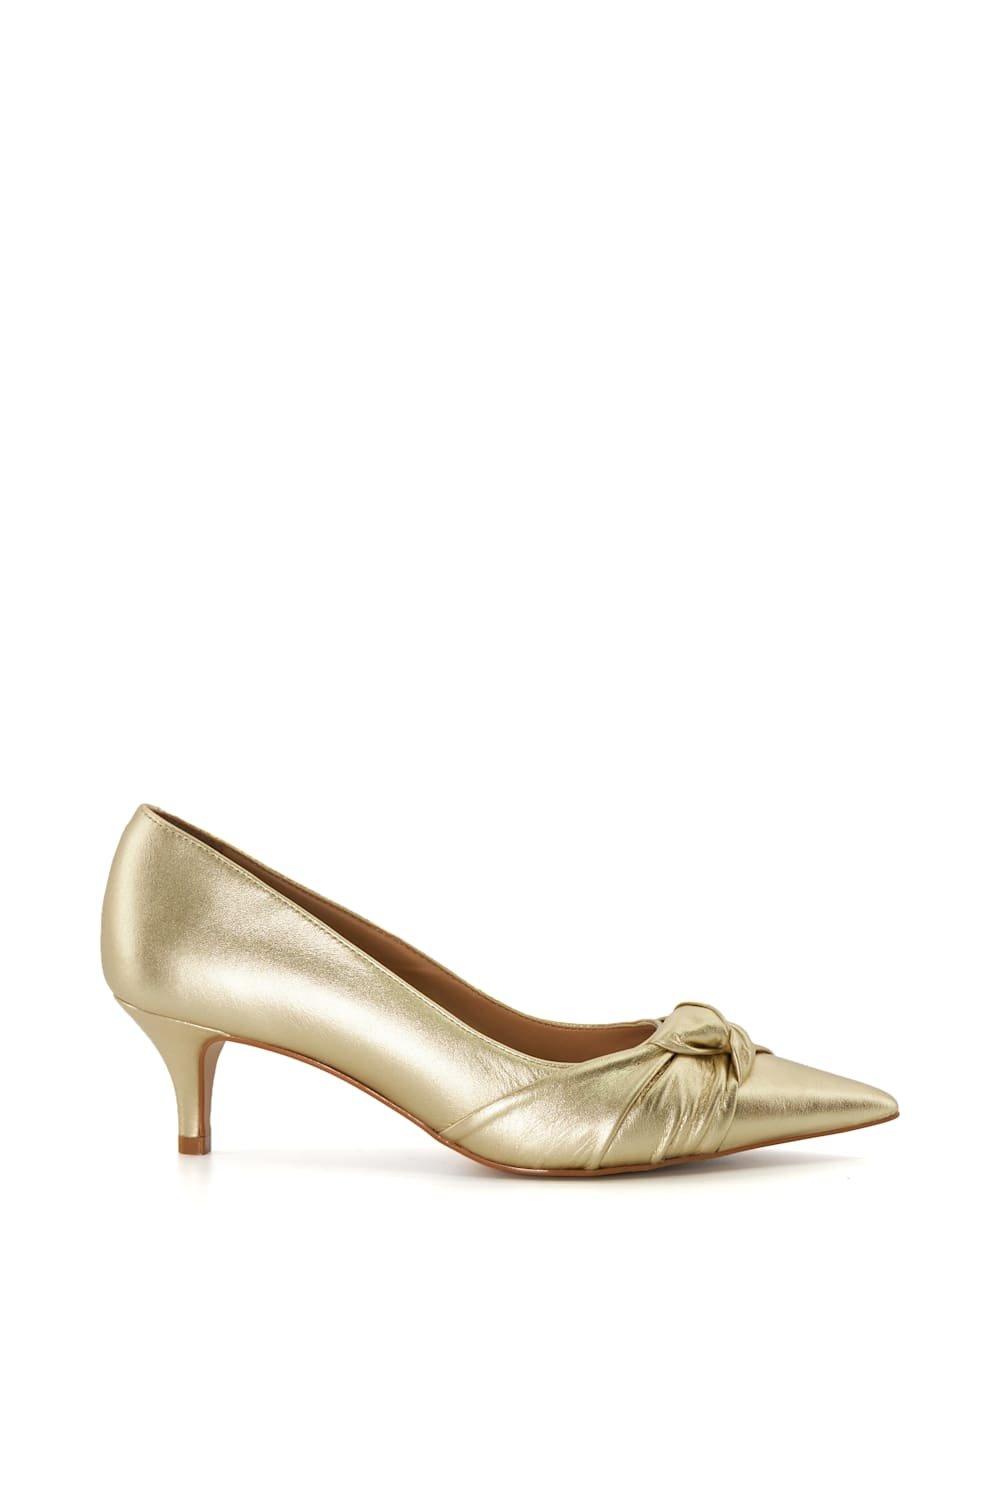 Кожаные туфли-лодочки «Адрес» Dune London, золото широкие корты dollis с заостренным двухсекционным носком wallis черный